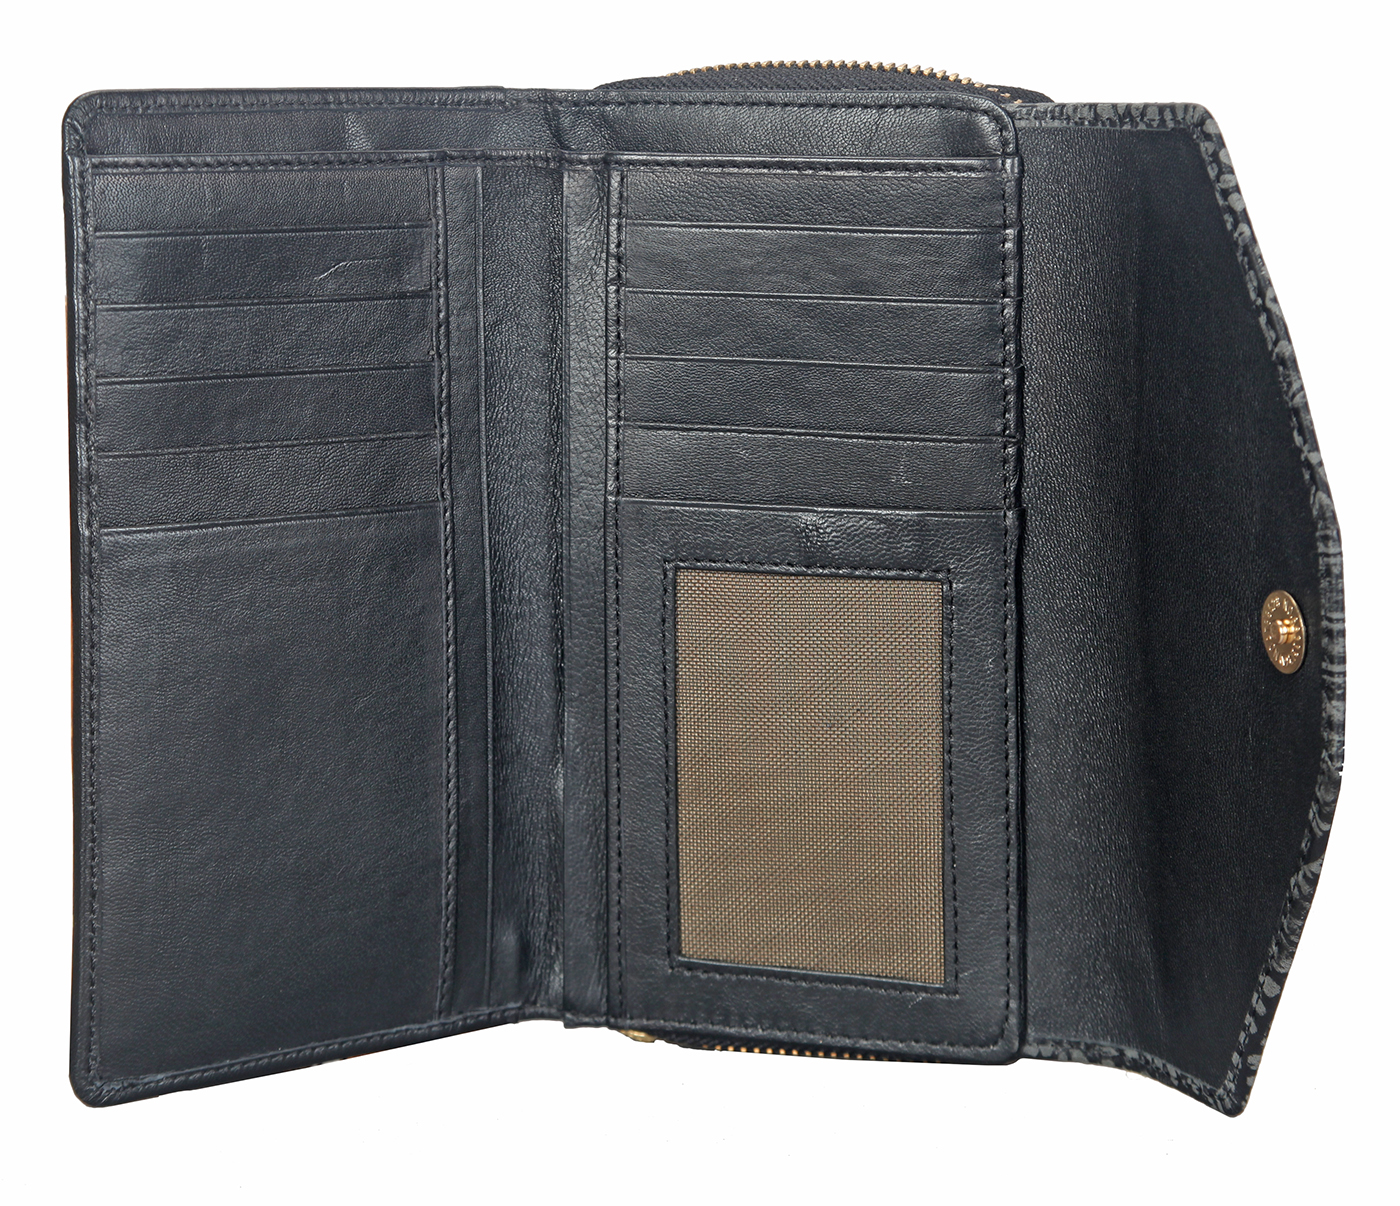 Wallet-Carolina-Women's bifold wallet in Genuine Leather - Black